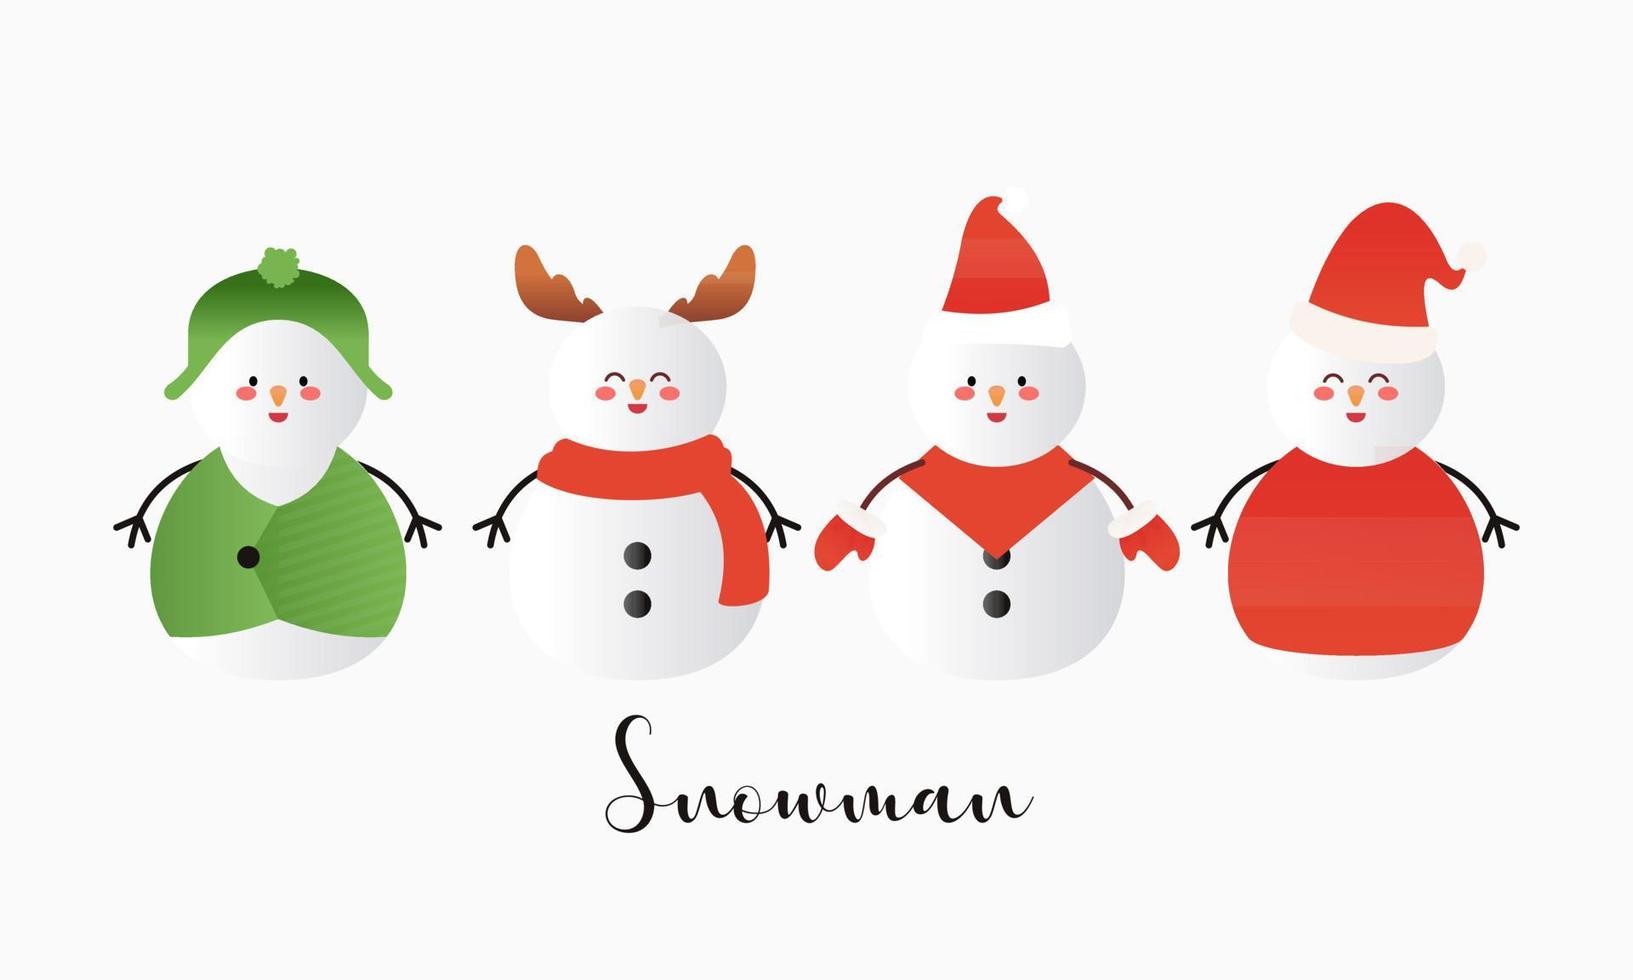 conjunto de muñecos de nieve de dibujos animados en diferentes poses ilustración vectorial vector